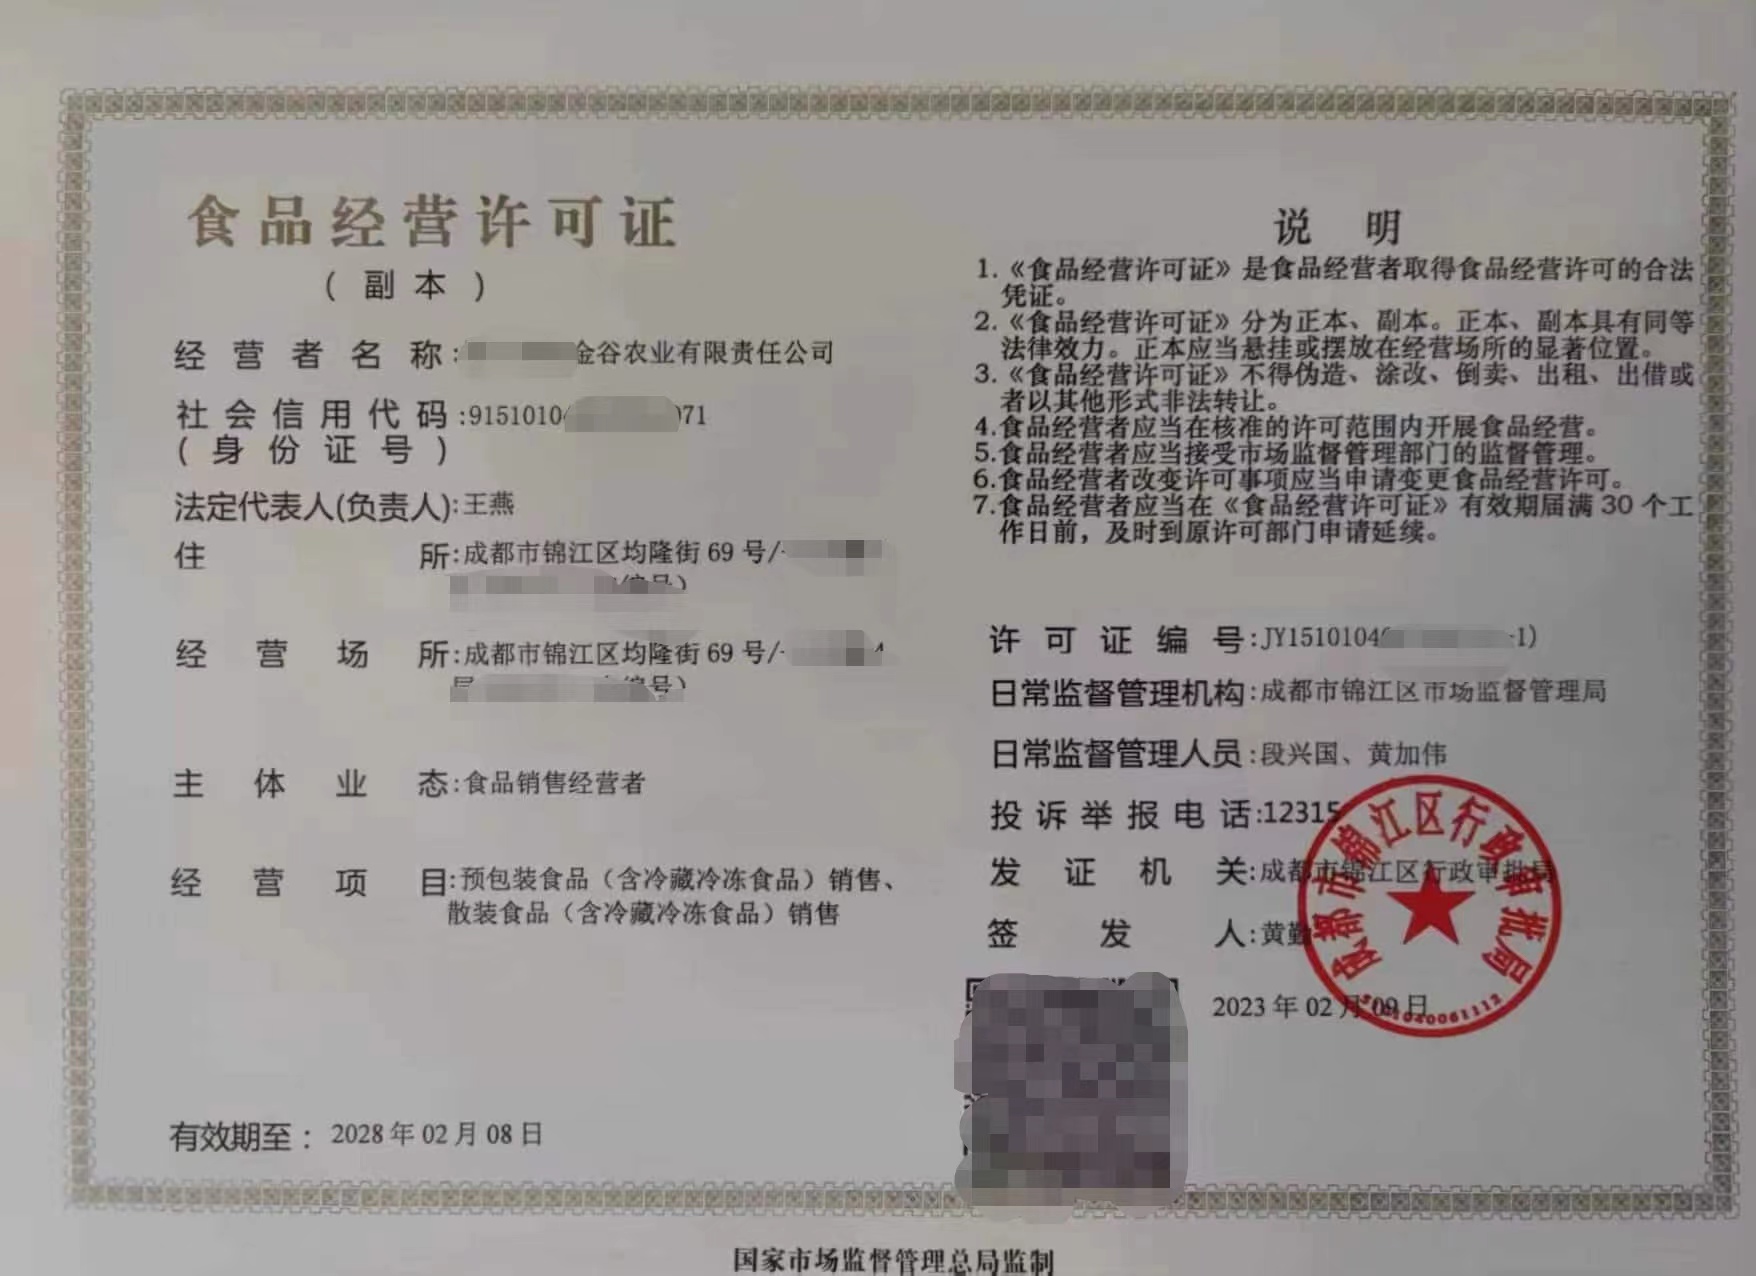 成都市办理指南食品经营许可证新津区核发登记